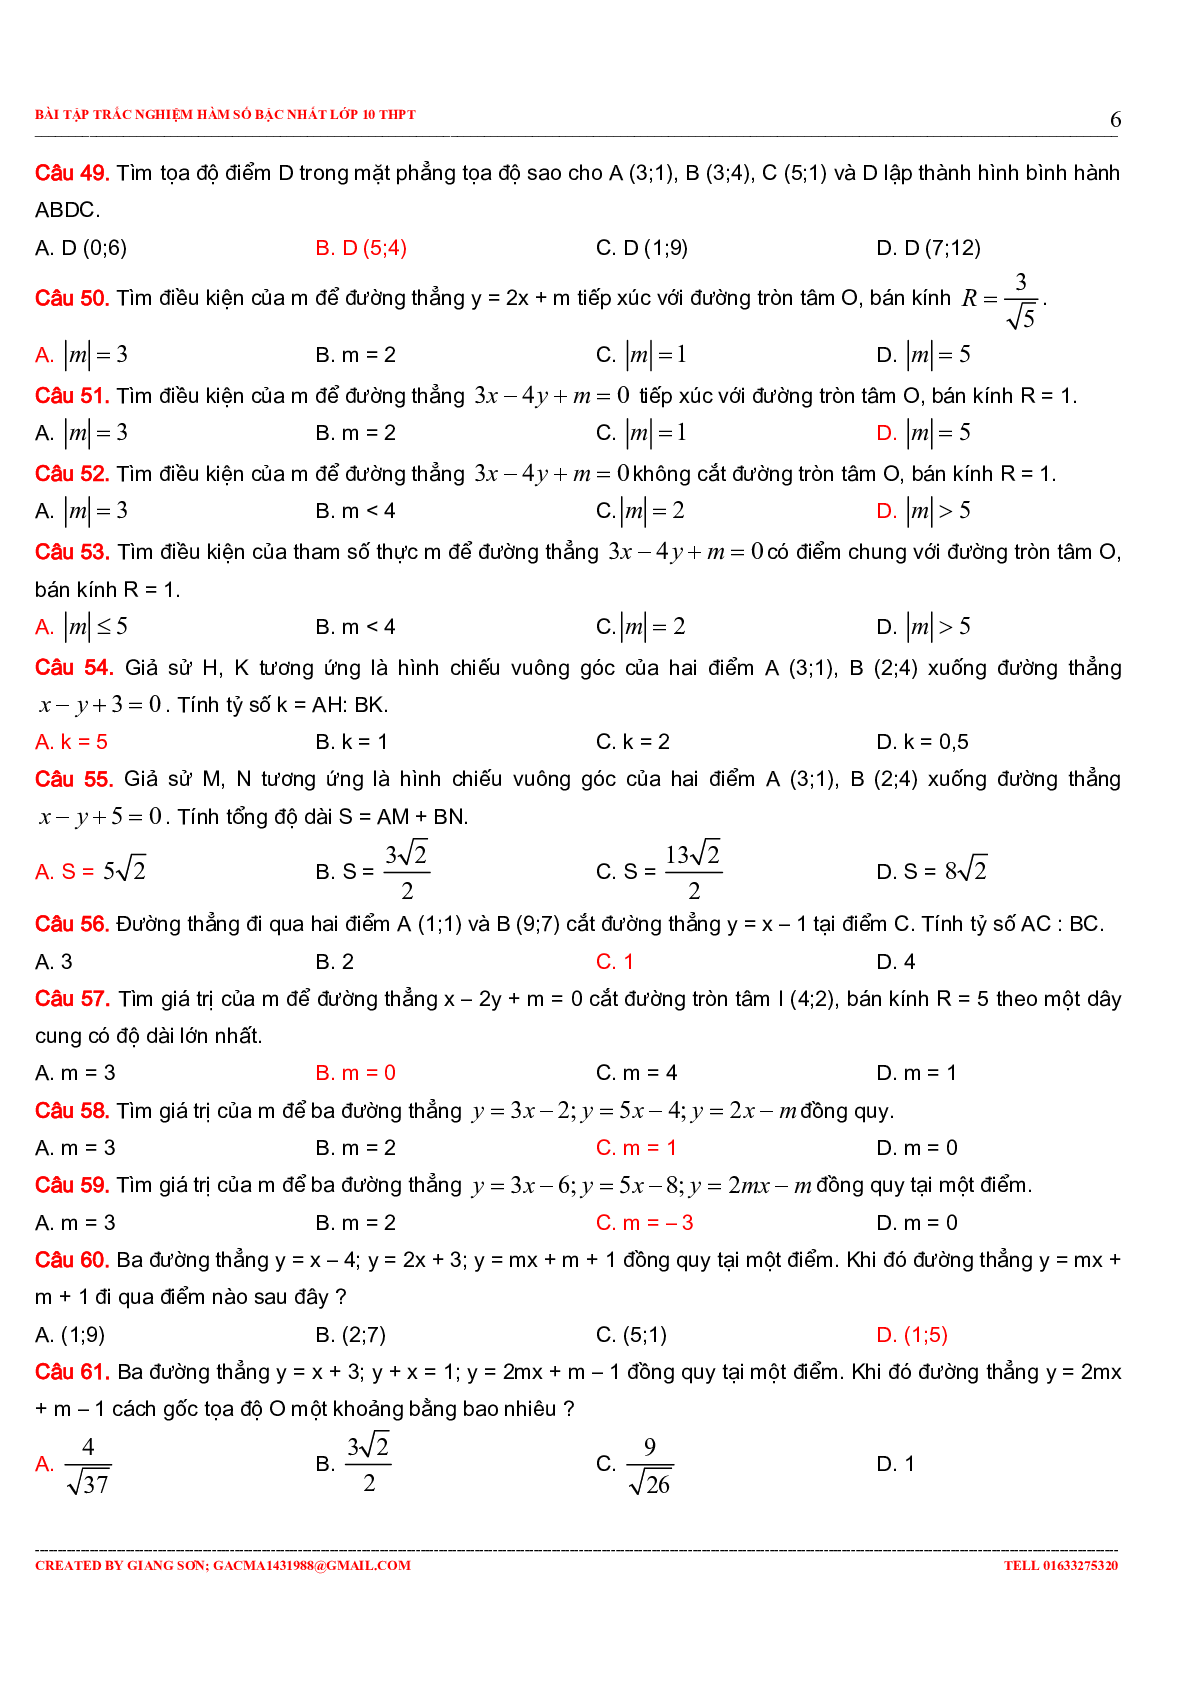 229 bài tập trắc nghiệm hàm số bậc nhất (trang 6)